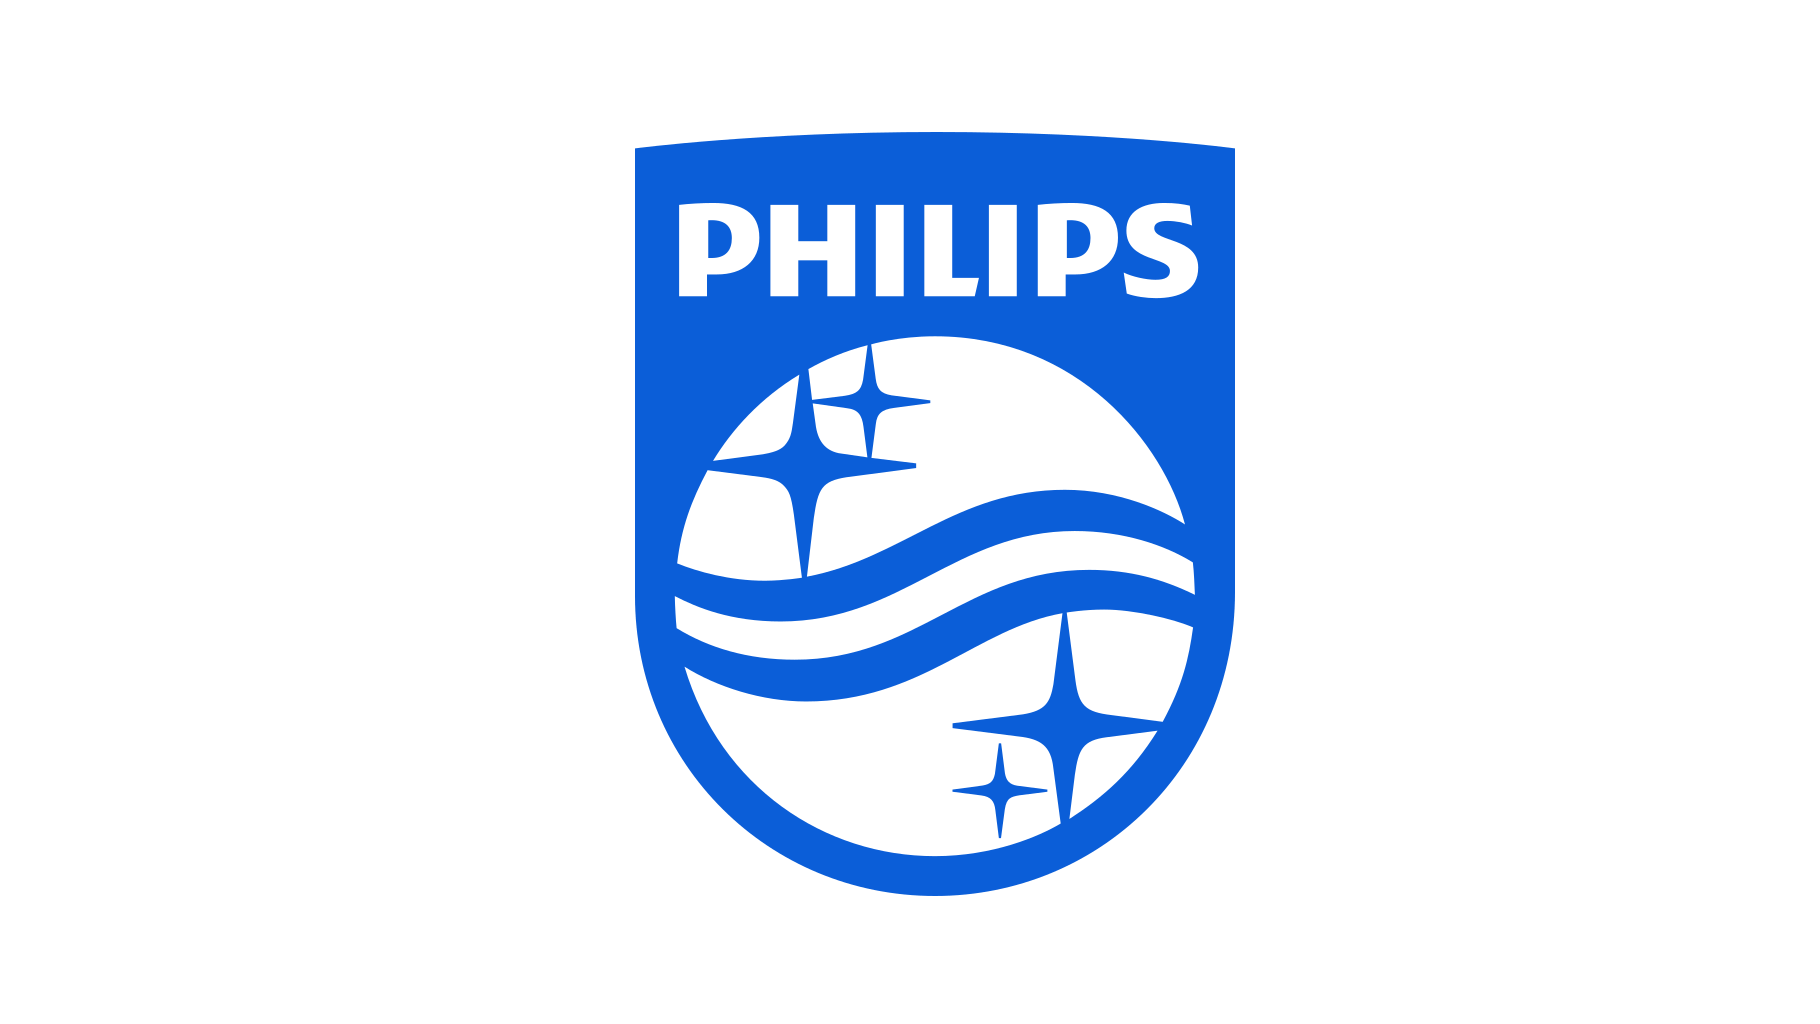 Electronic Company Logo - Philips logo | Dwglogo